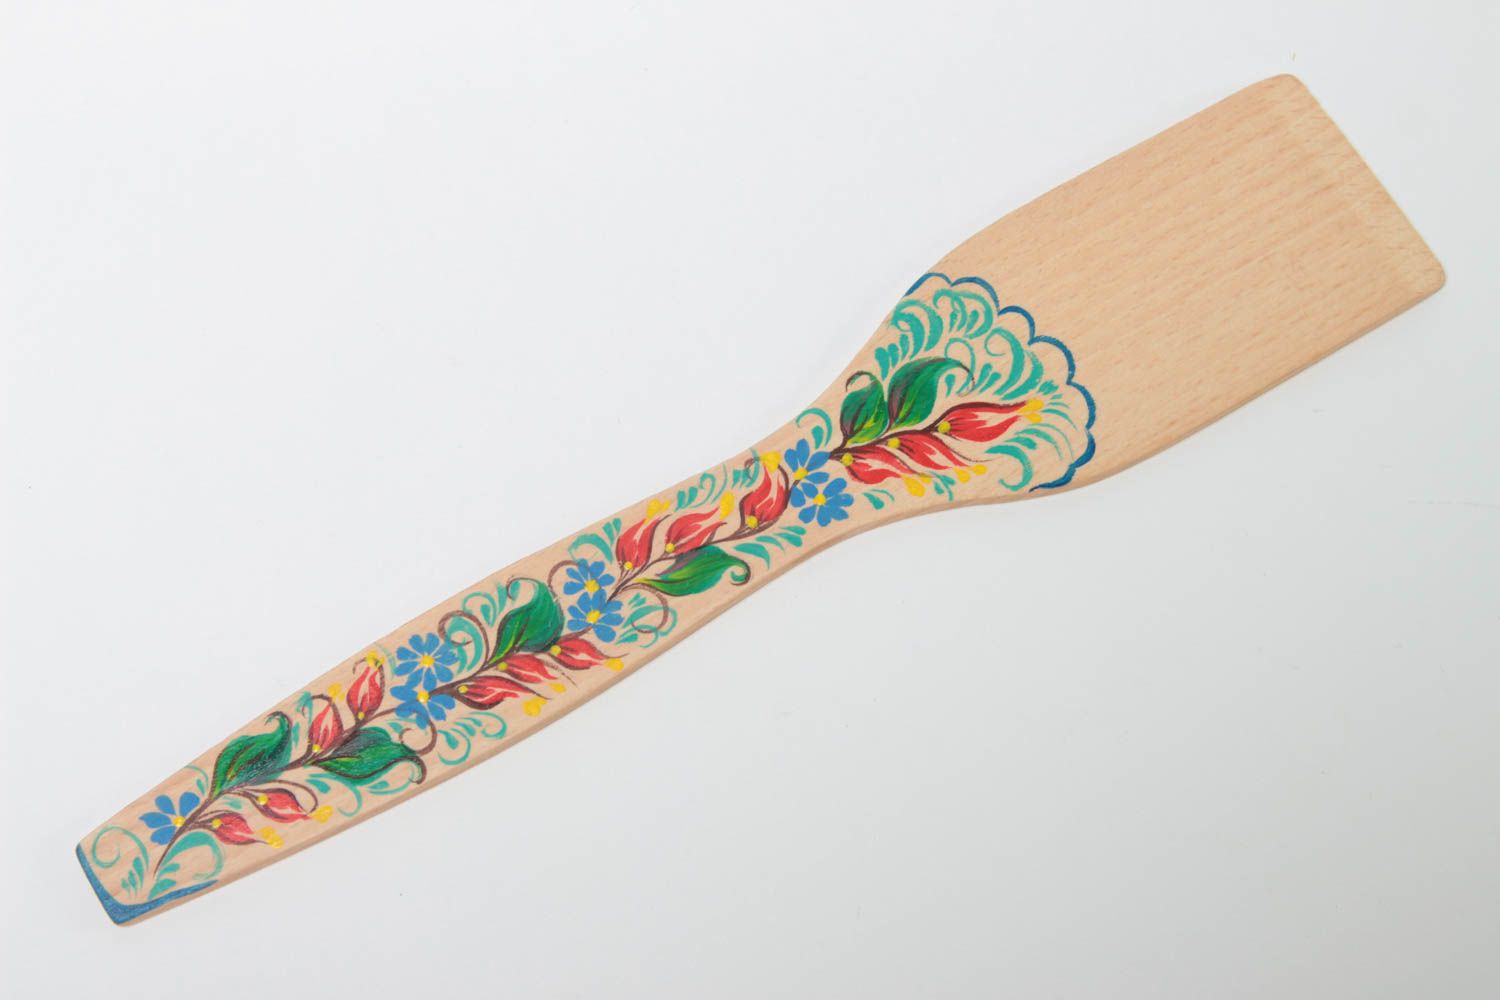 Bright handmade wooden spatula decorative kitchen utensils kitchen designs photo 2